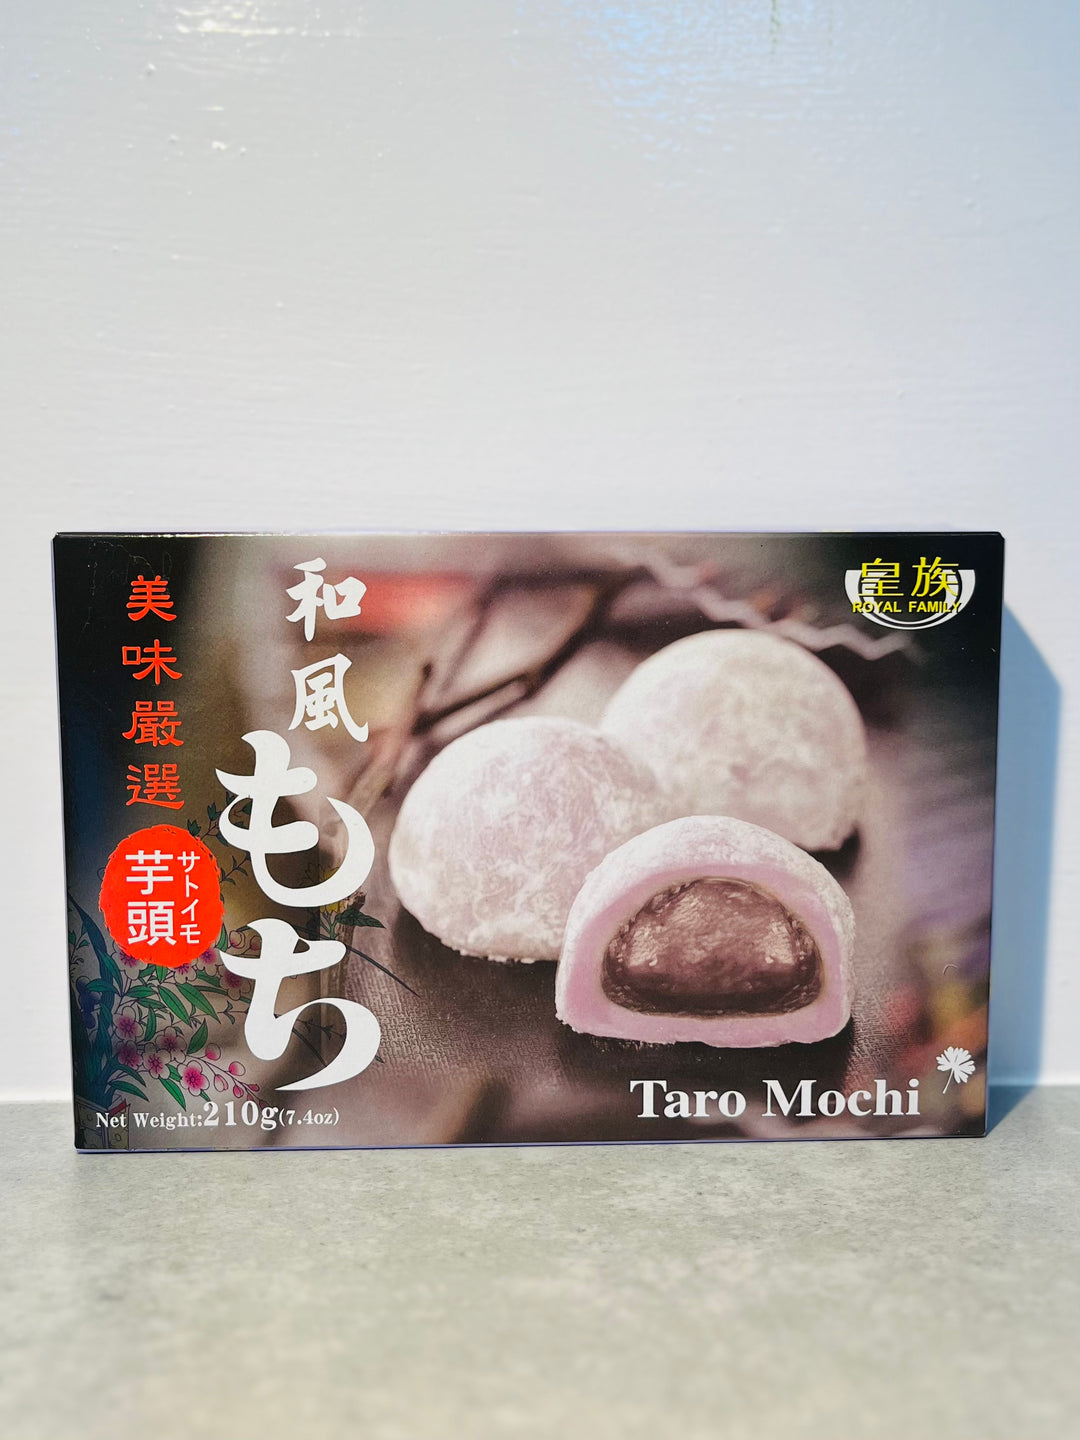 皇族和风芋头麻薯210g RF Taro Mochi